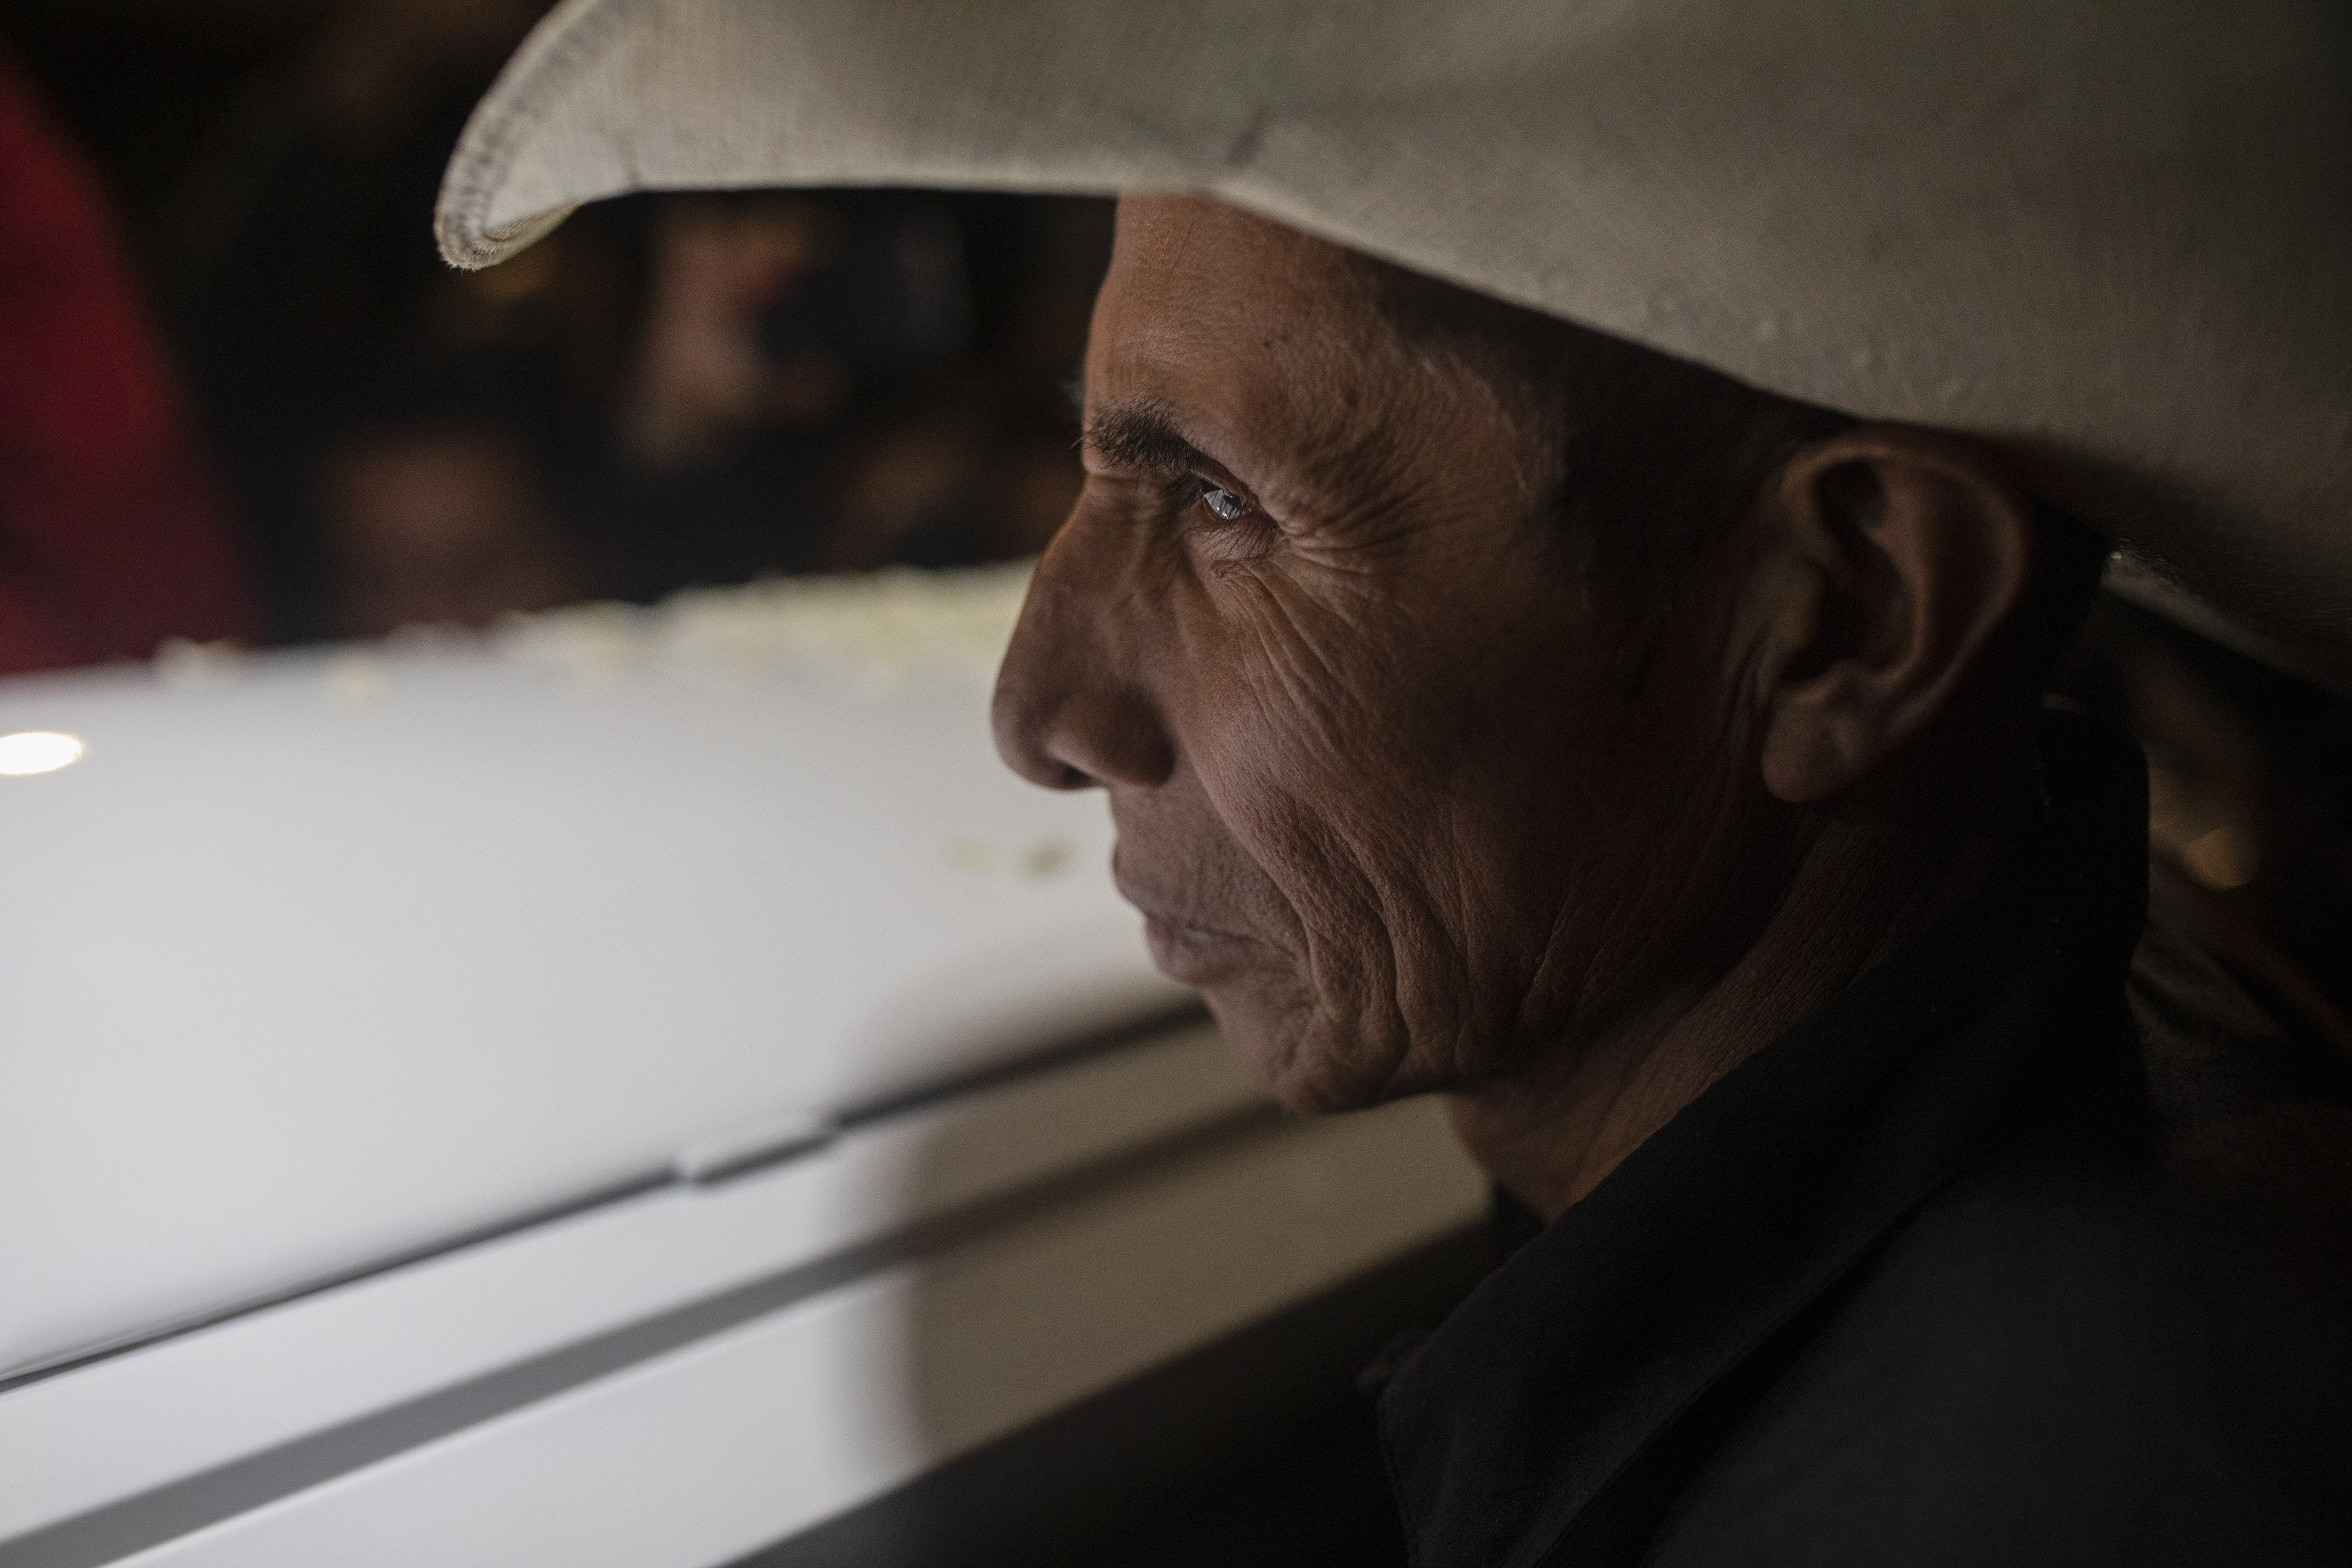 Los cuerpos de los migrantes que murieron en el tráiler de Texas regresan a México